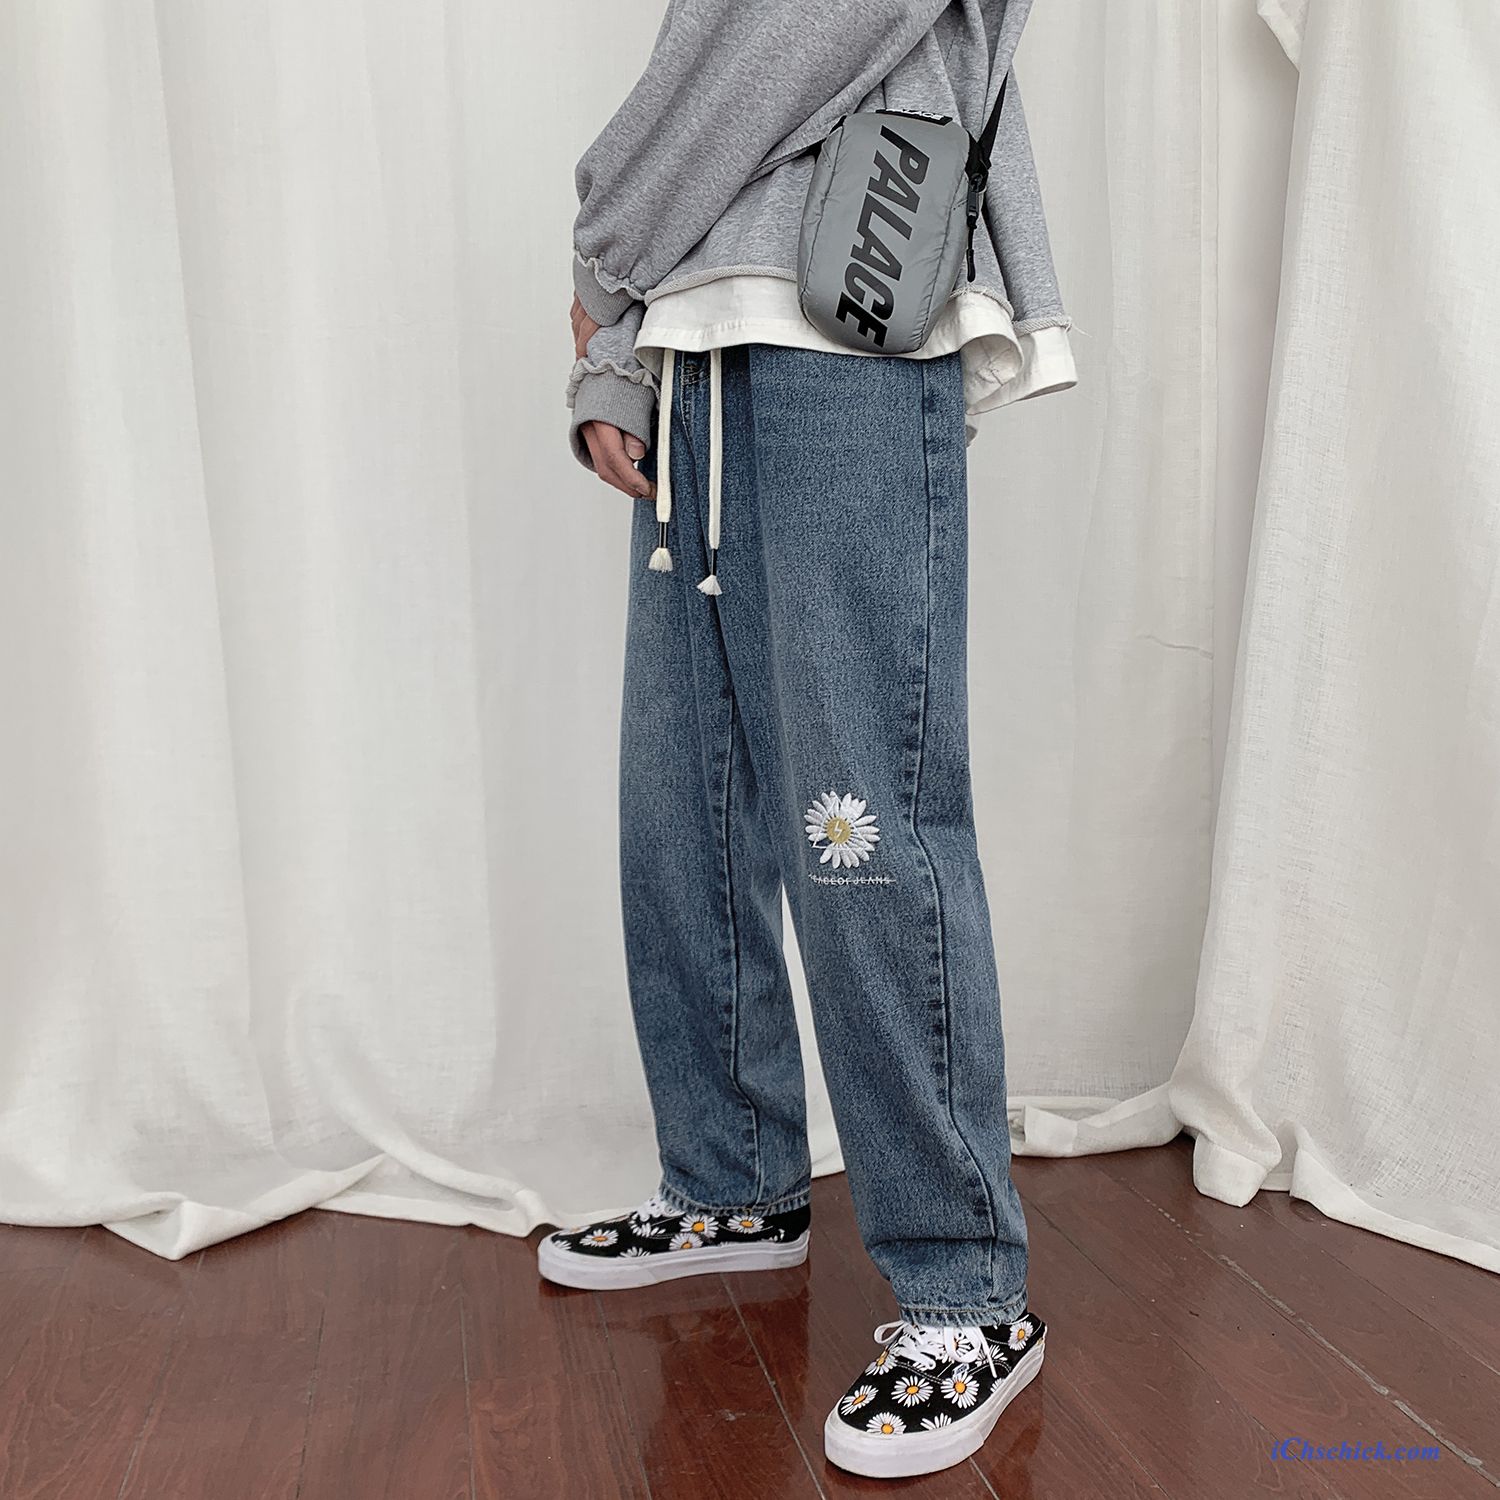 Bekleidung Jeans Trend Weites Bein Allgleiches Hosen Trendmarke Blau Sale